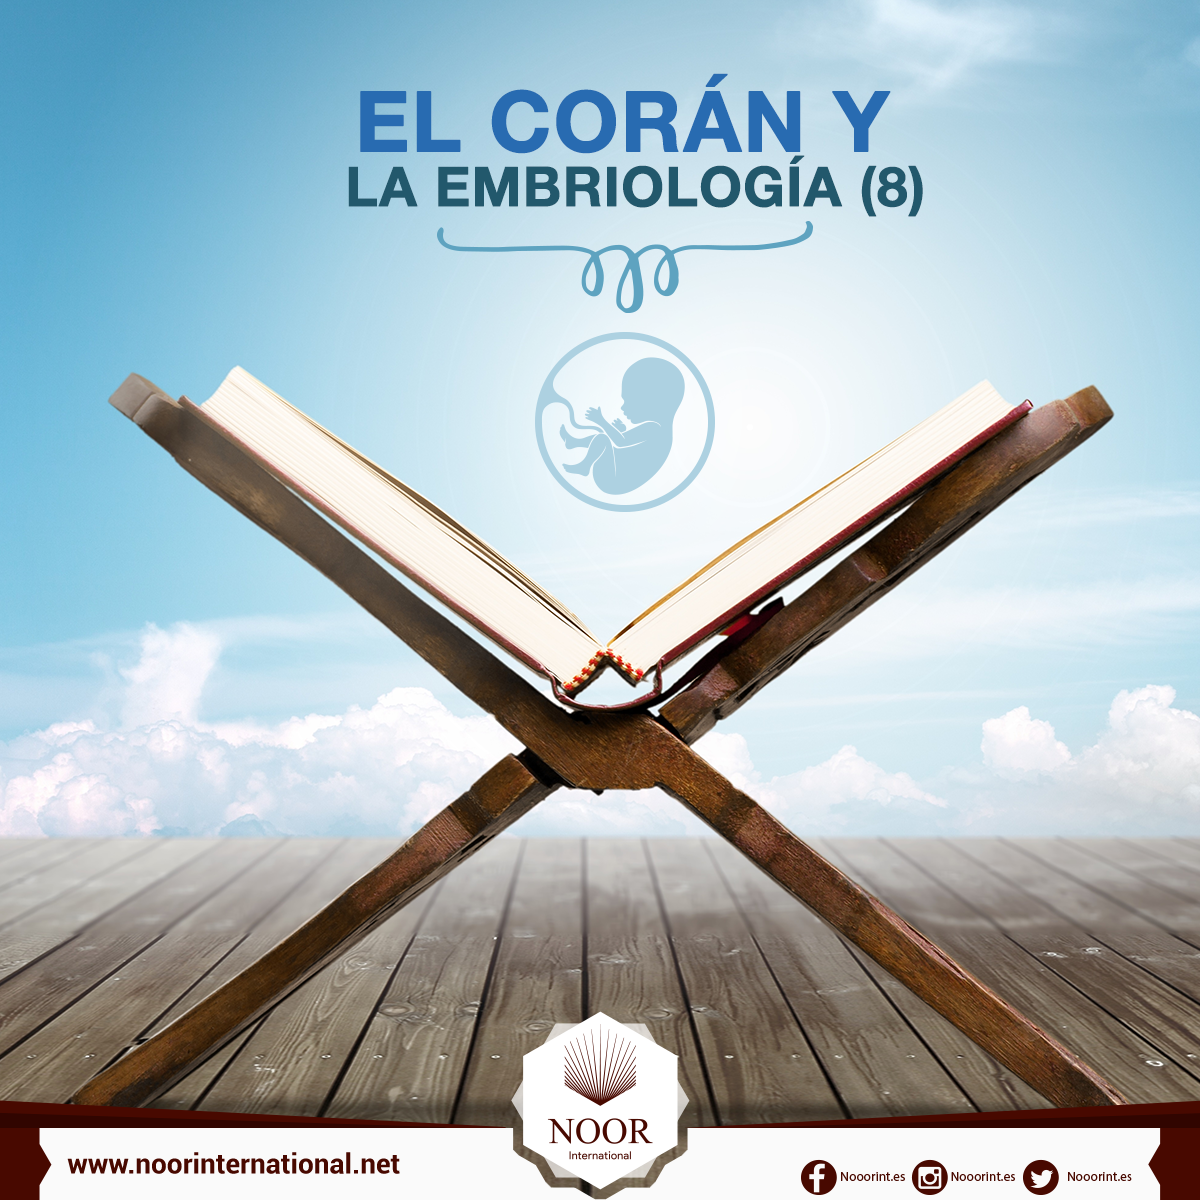 El Corán y la embriología